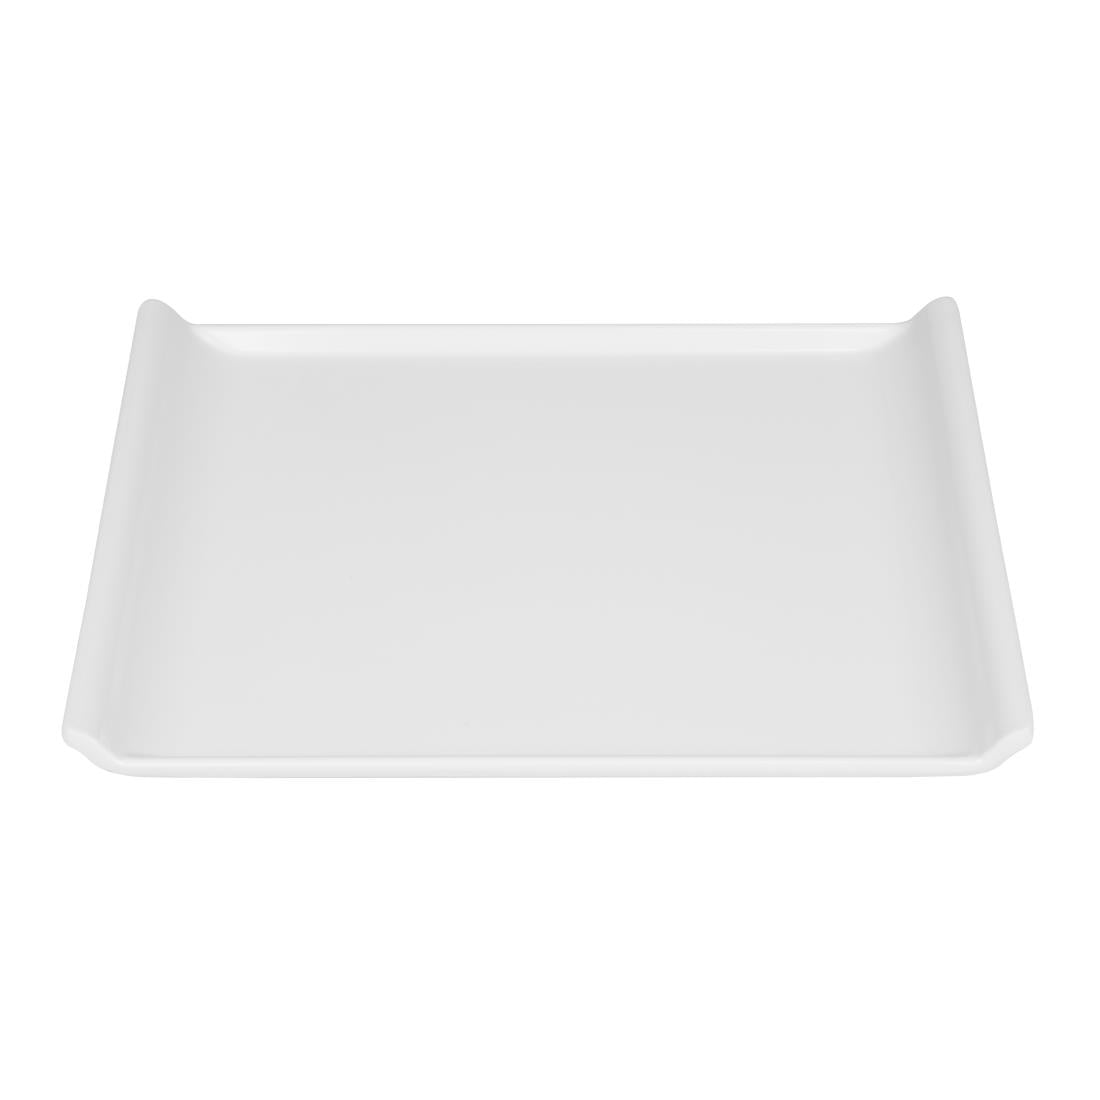 Kristallon Melamine Platter White 300 x 250mm JD Catering Equipment Solutions Ltd